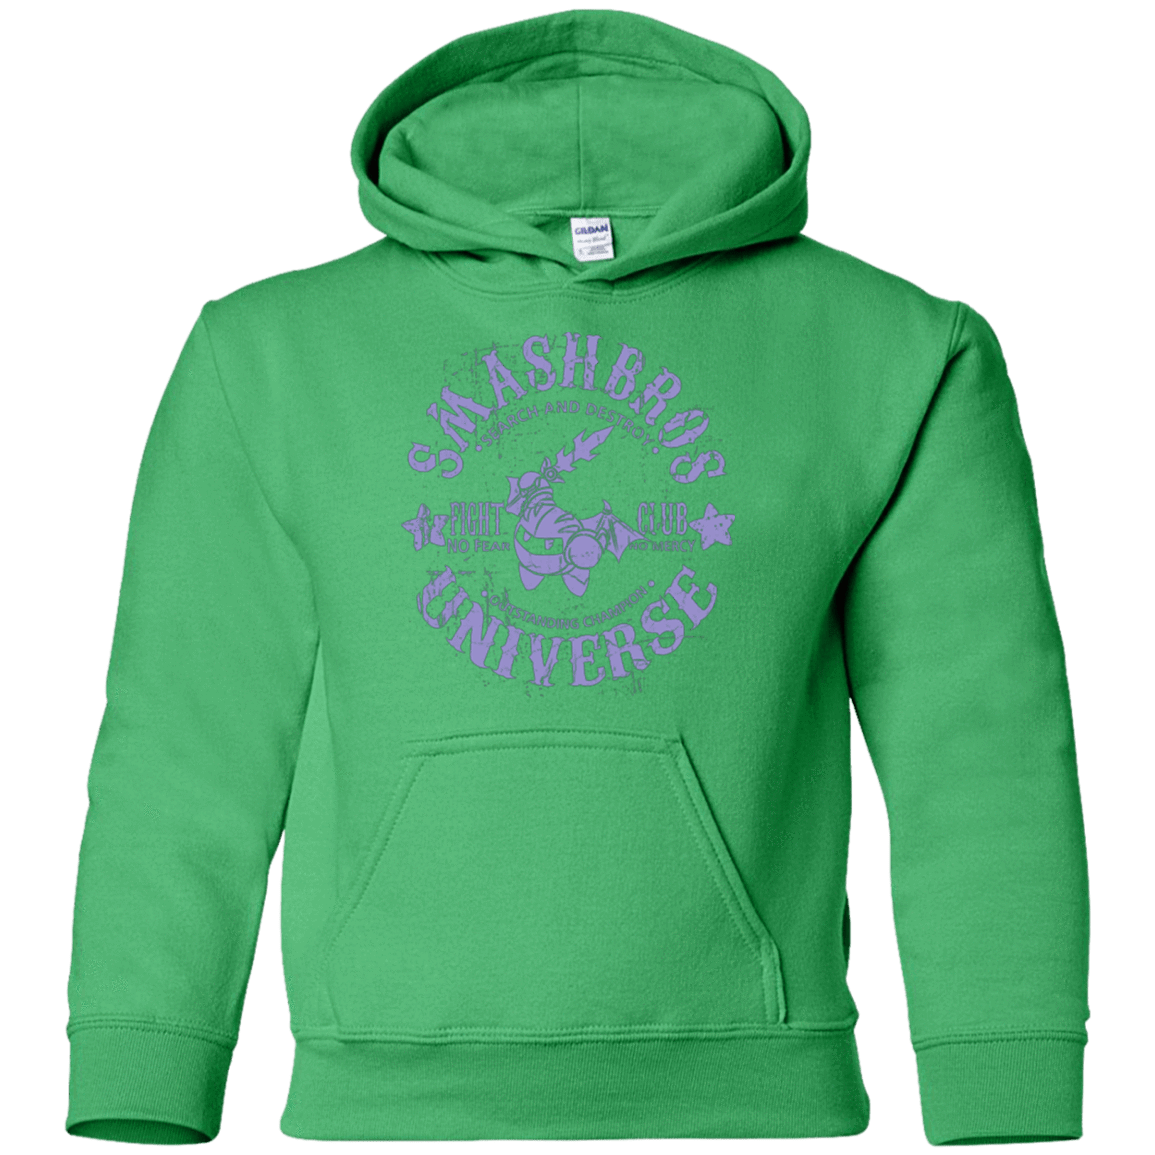 Sweatshirts Irish Green / YS STAR CHAMPION 2 Youth Hoodie